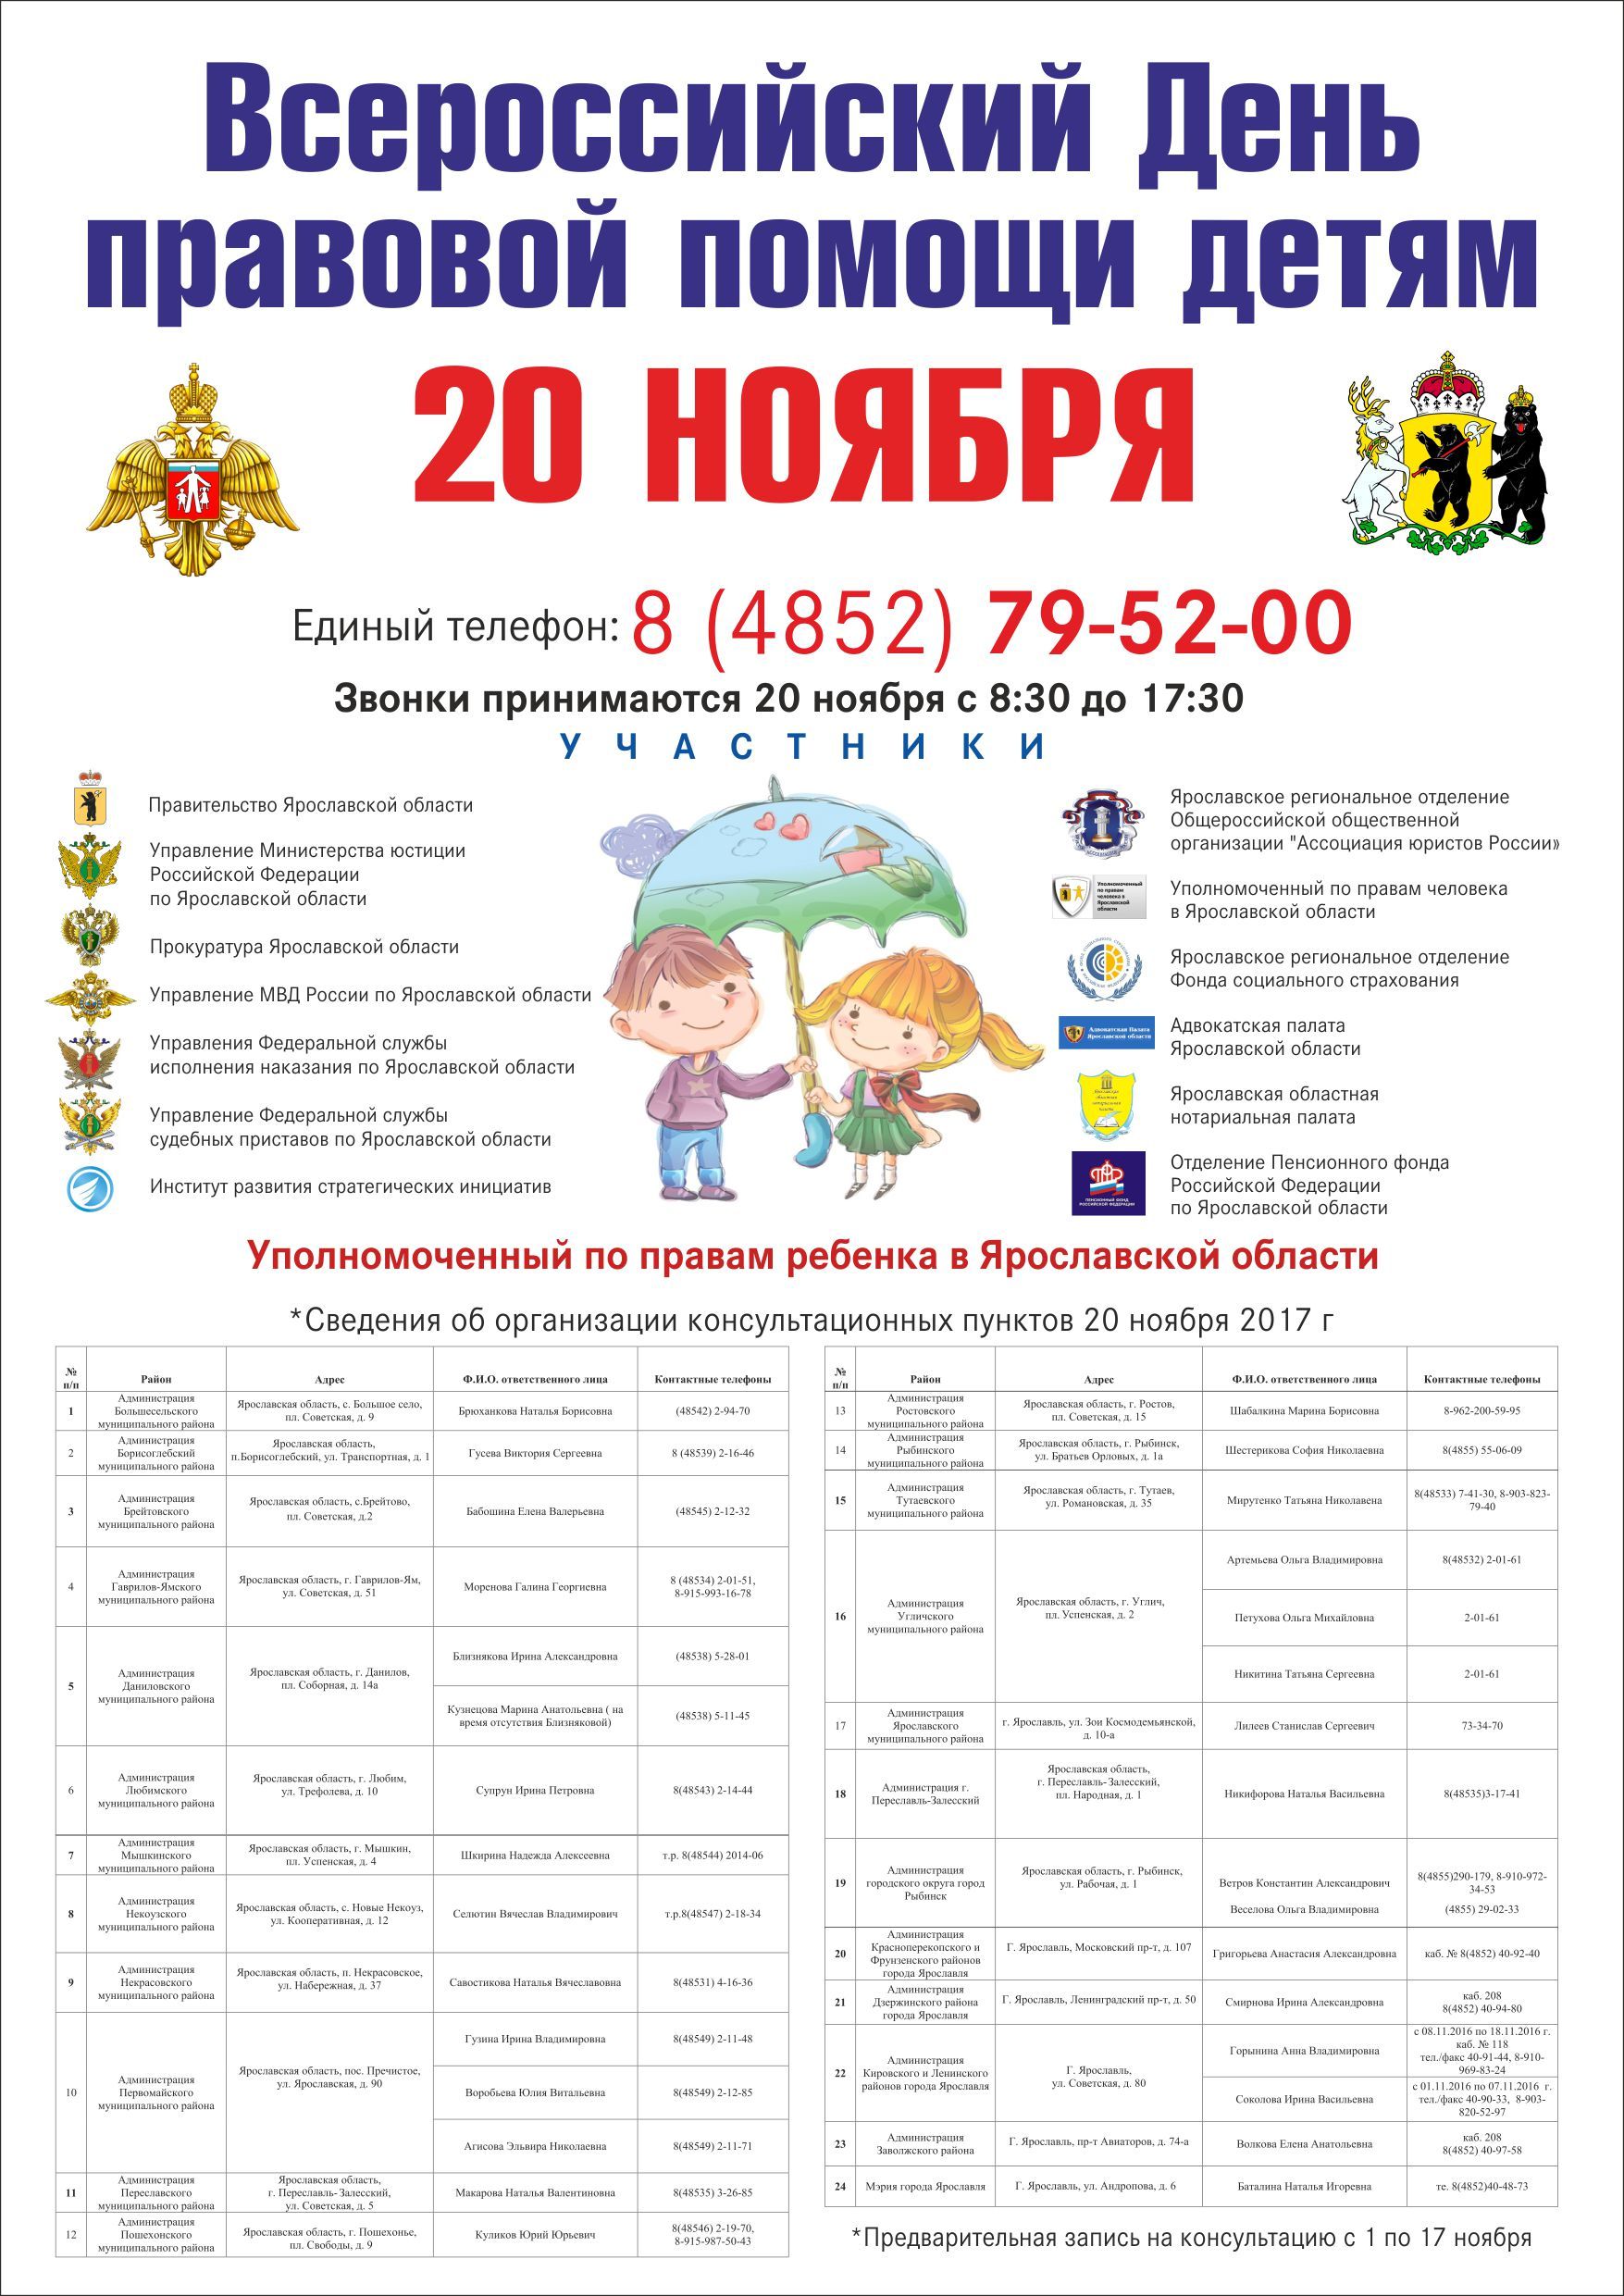 Всероссийский день ребенка 20 ноября